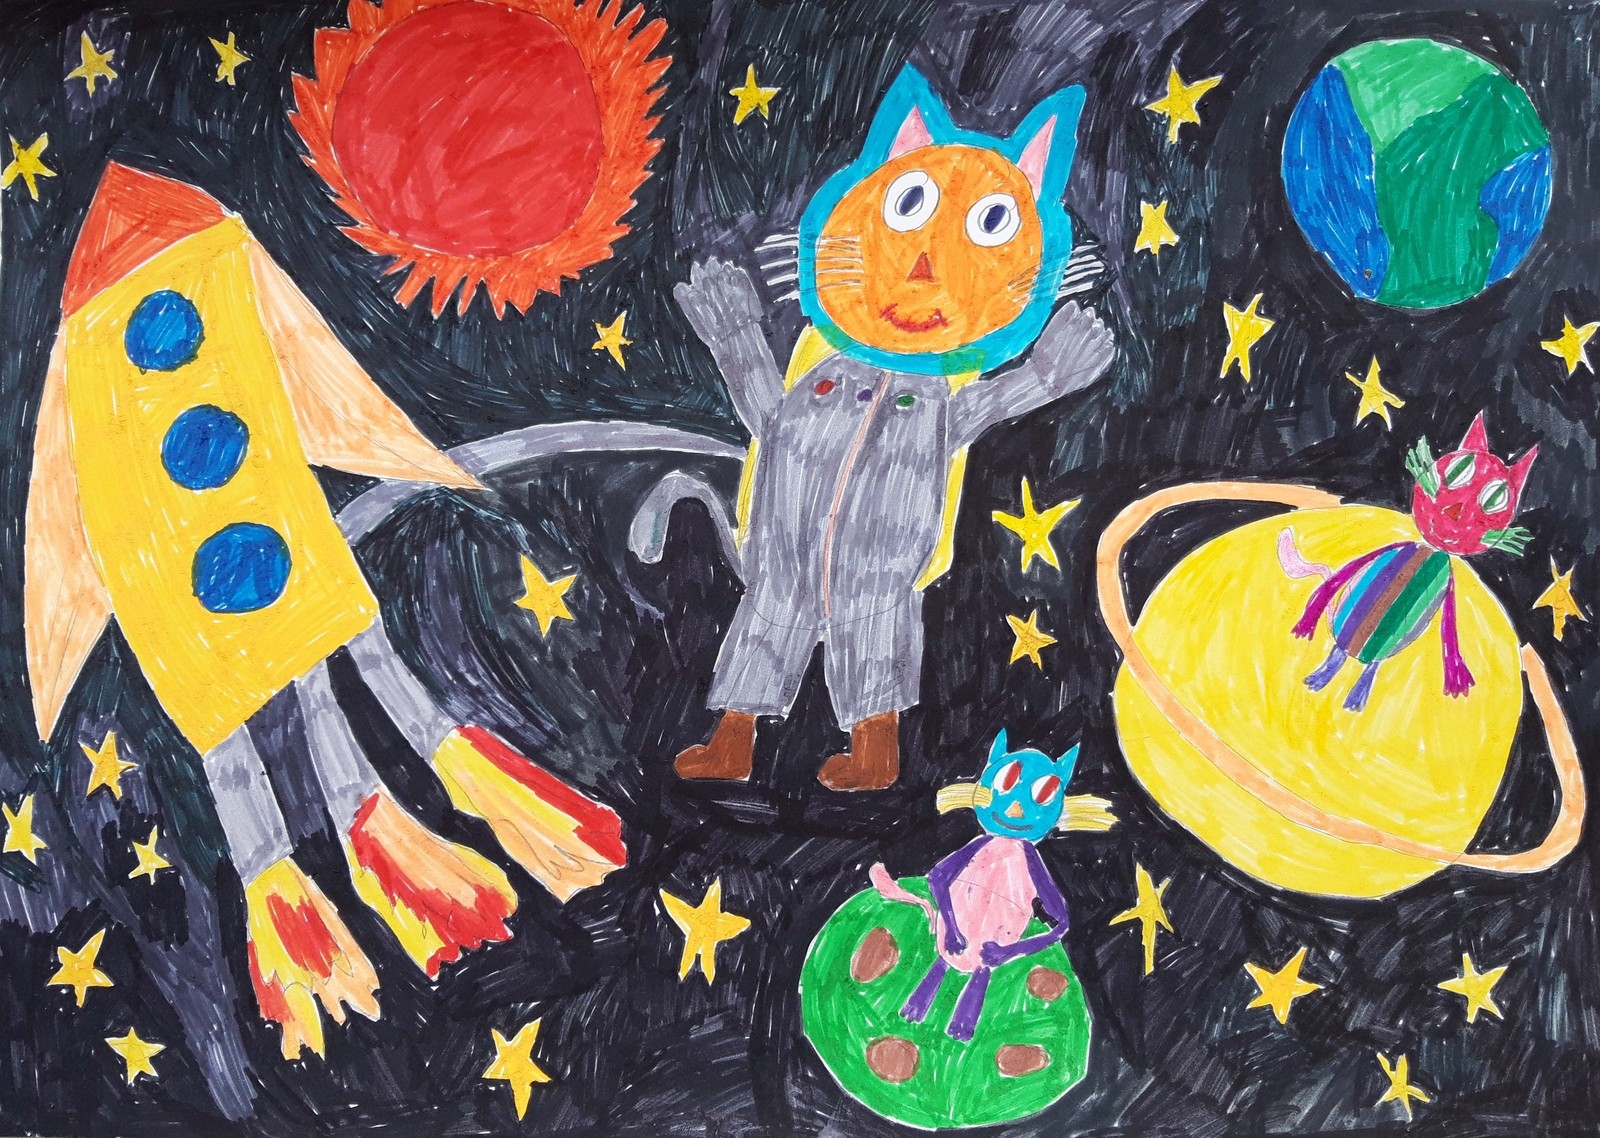 Конкурсы для детей про космос